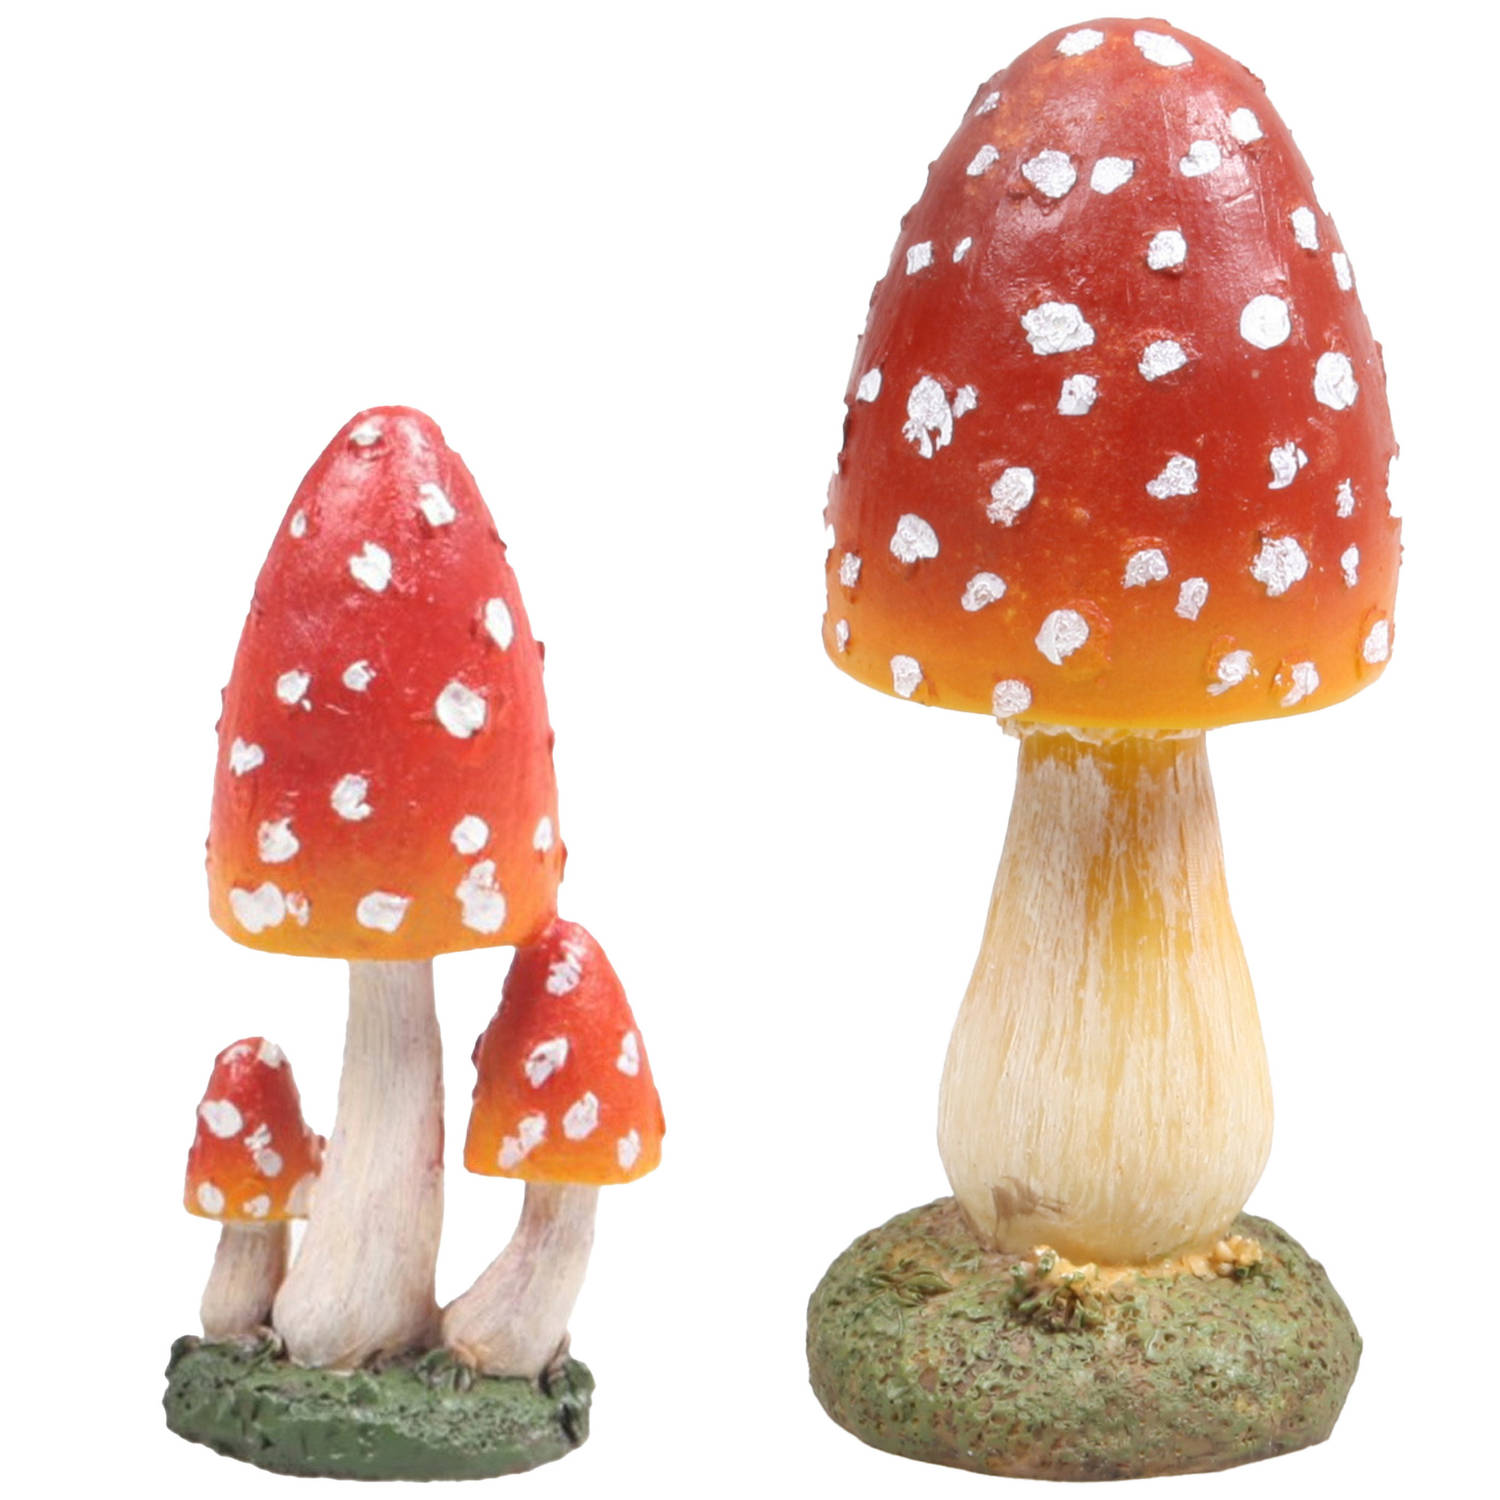 Decoratie paddenstoelen setje met 4x vliegenzwam paddenstoelen herfst thema Tuinbeelden